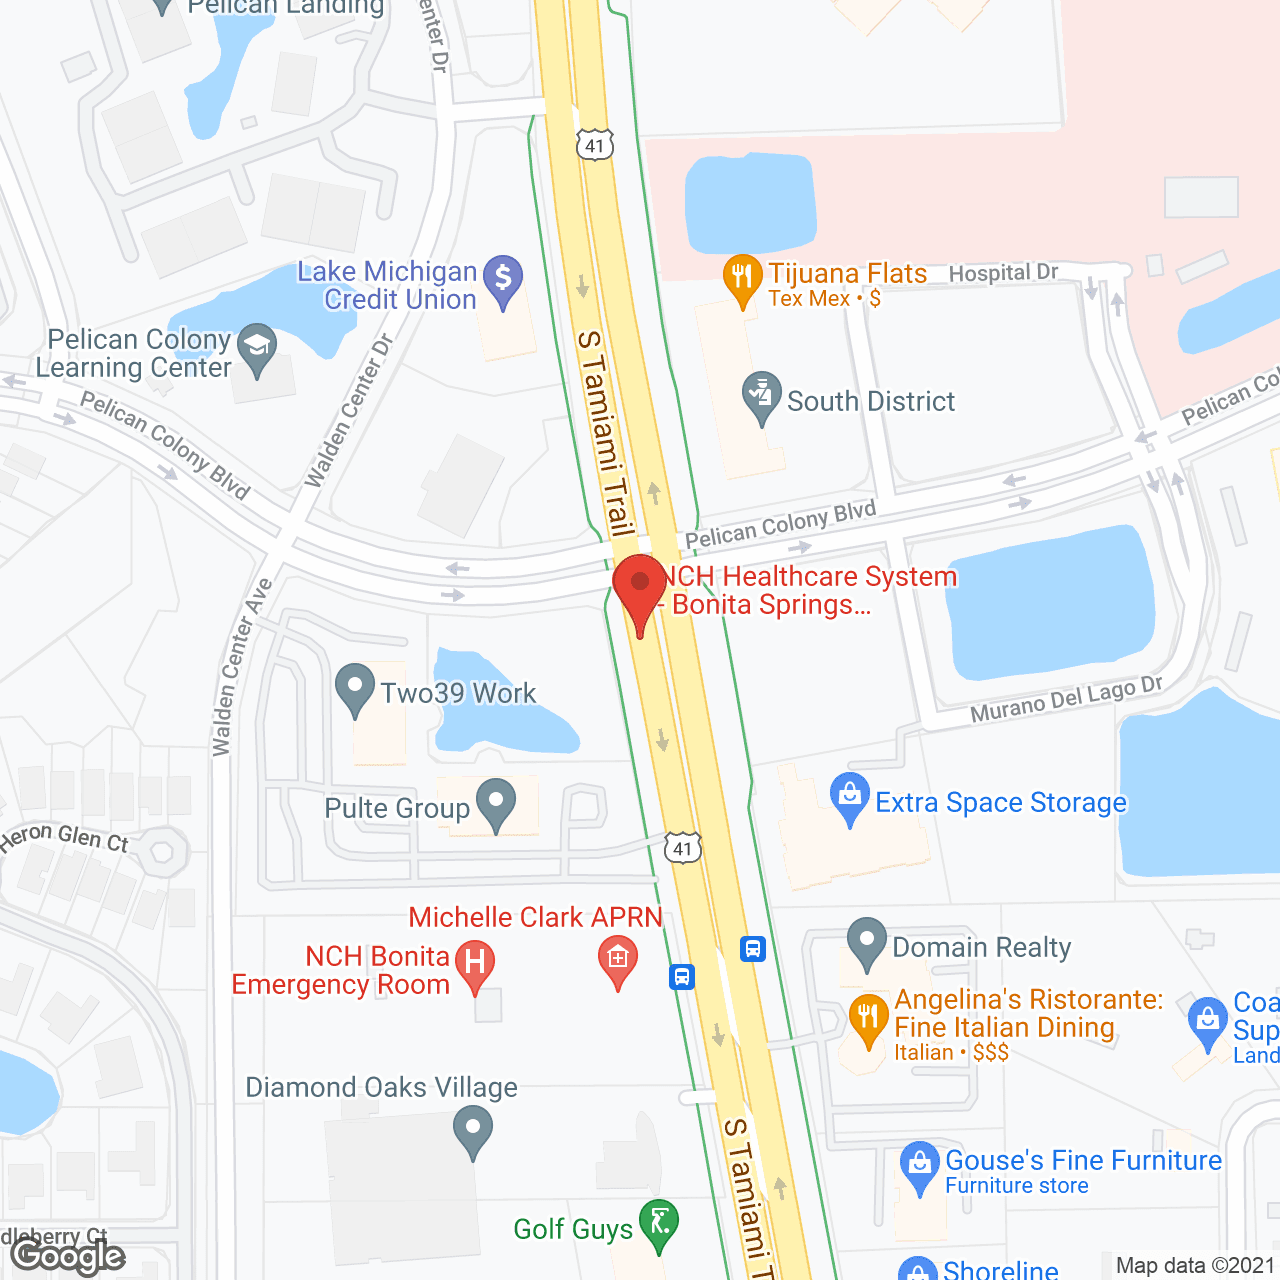 Diamond Oaks Village in google map